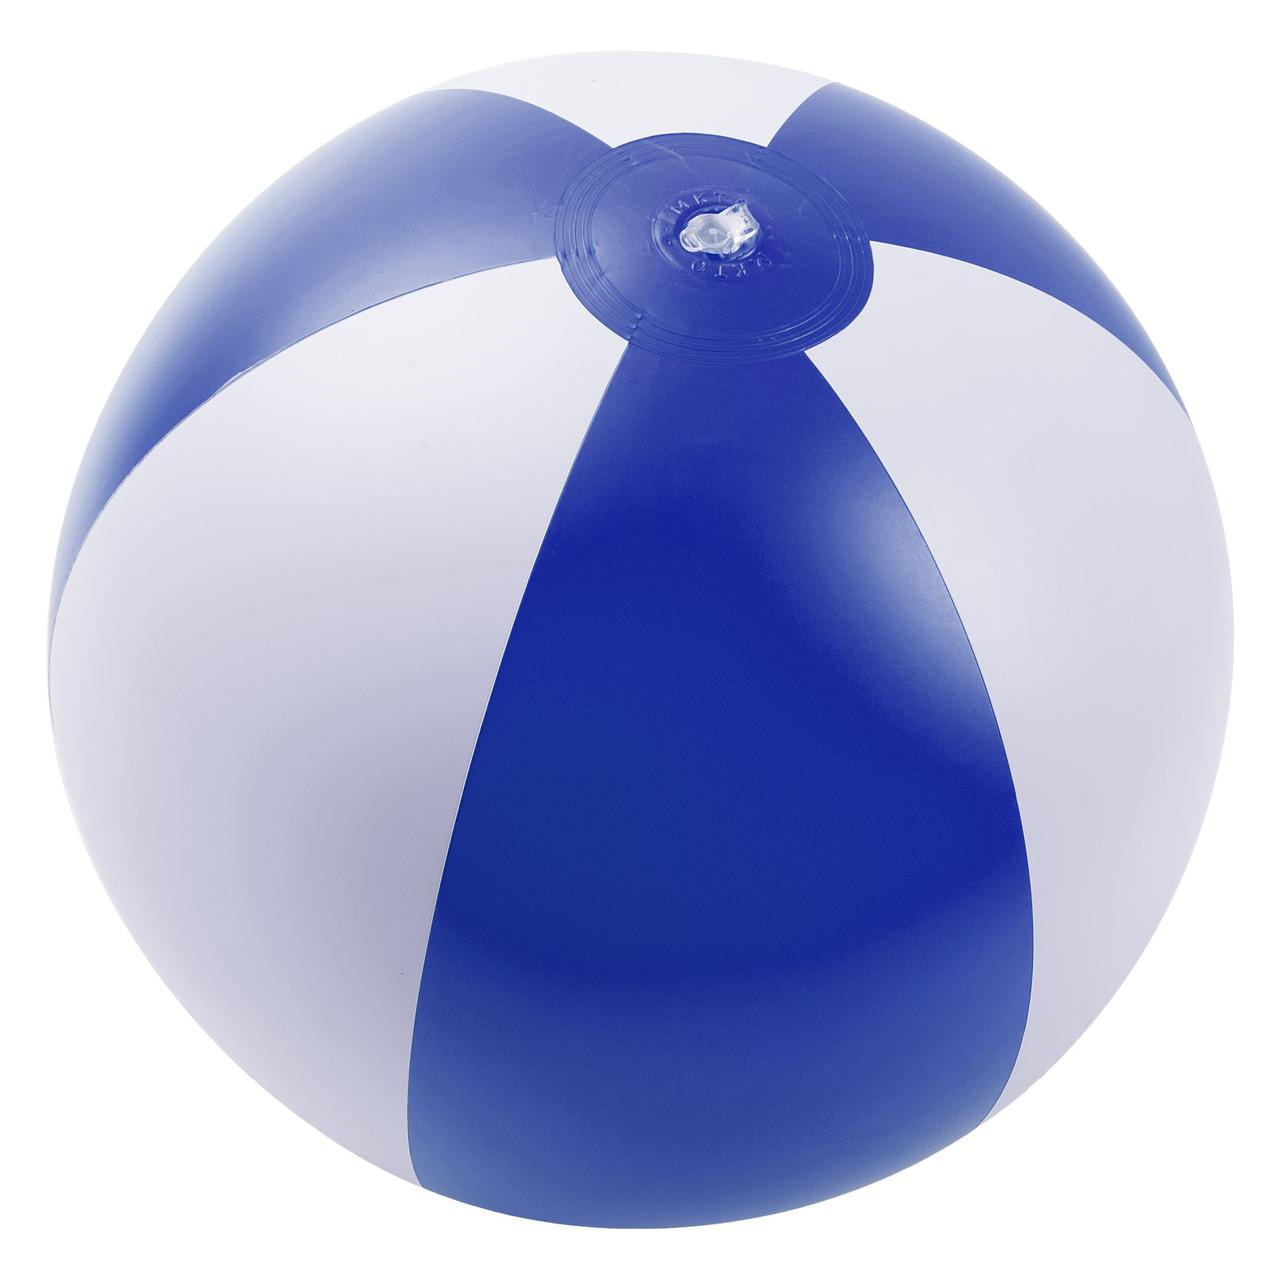 Надувной пляжный мяч Jumper, синий с белым (артикул MKT8094blue)